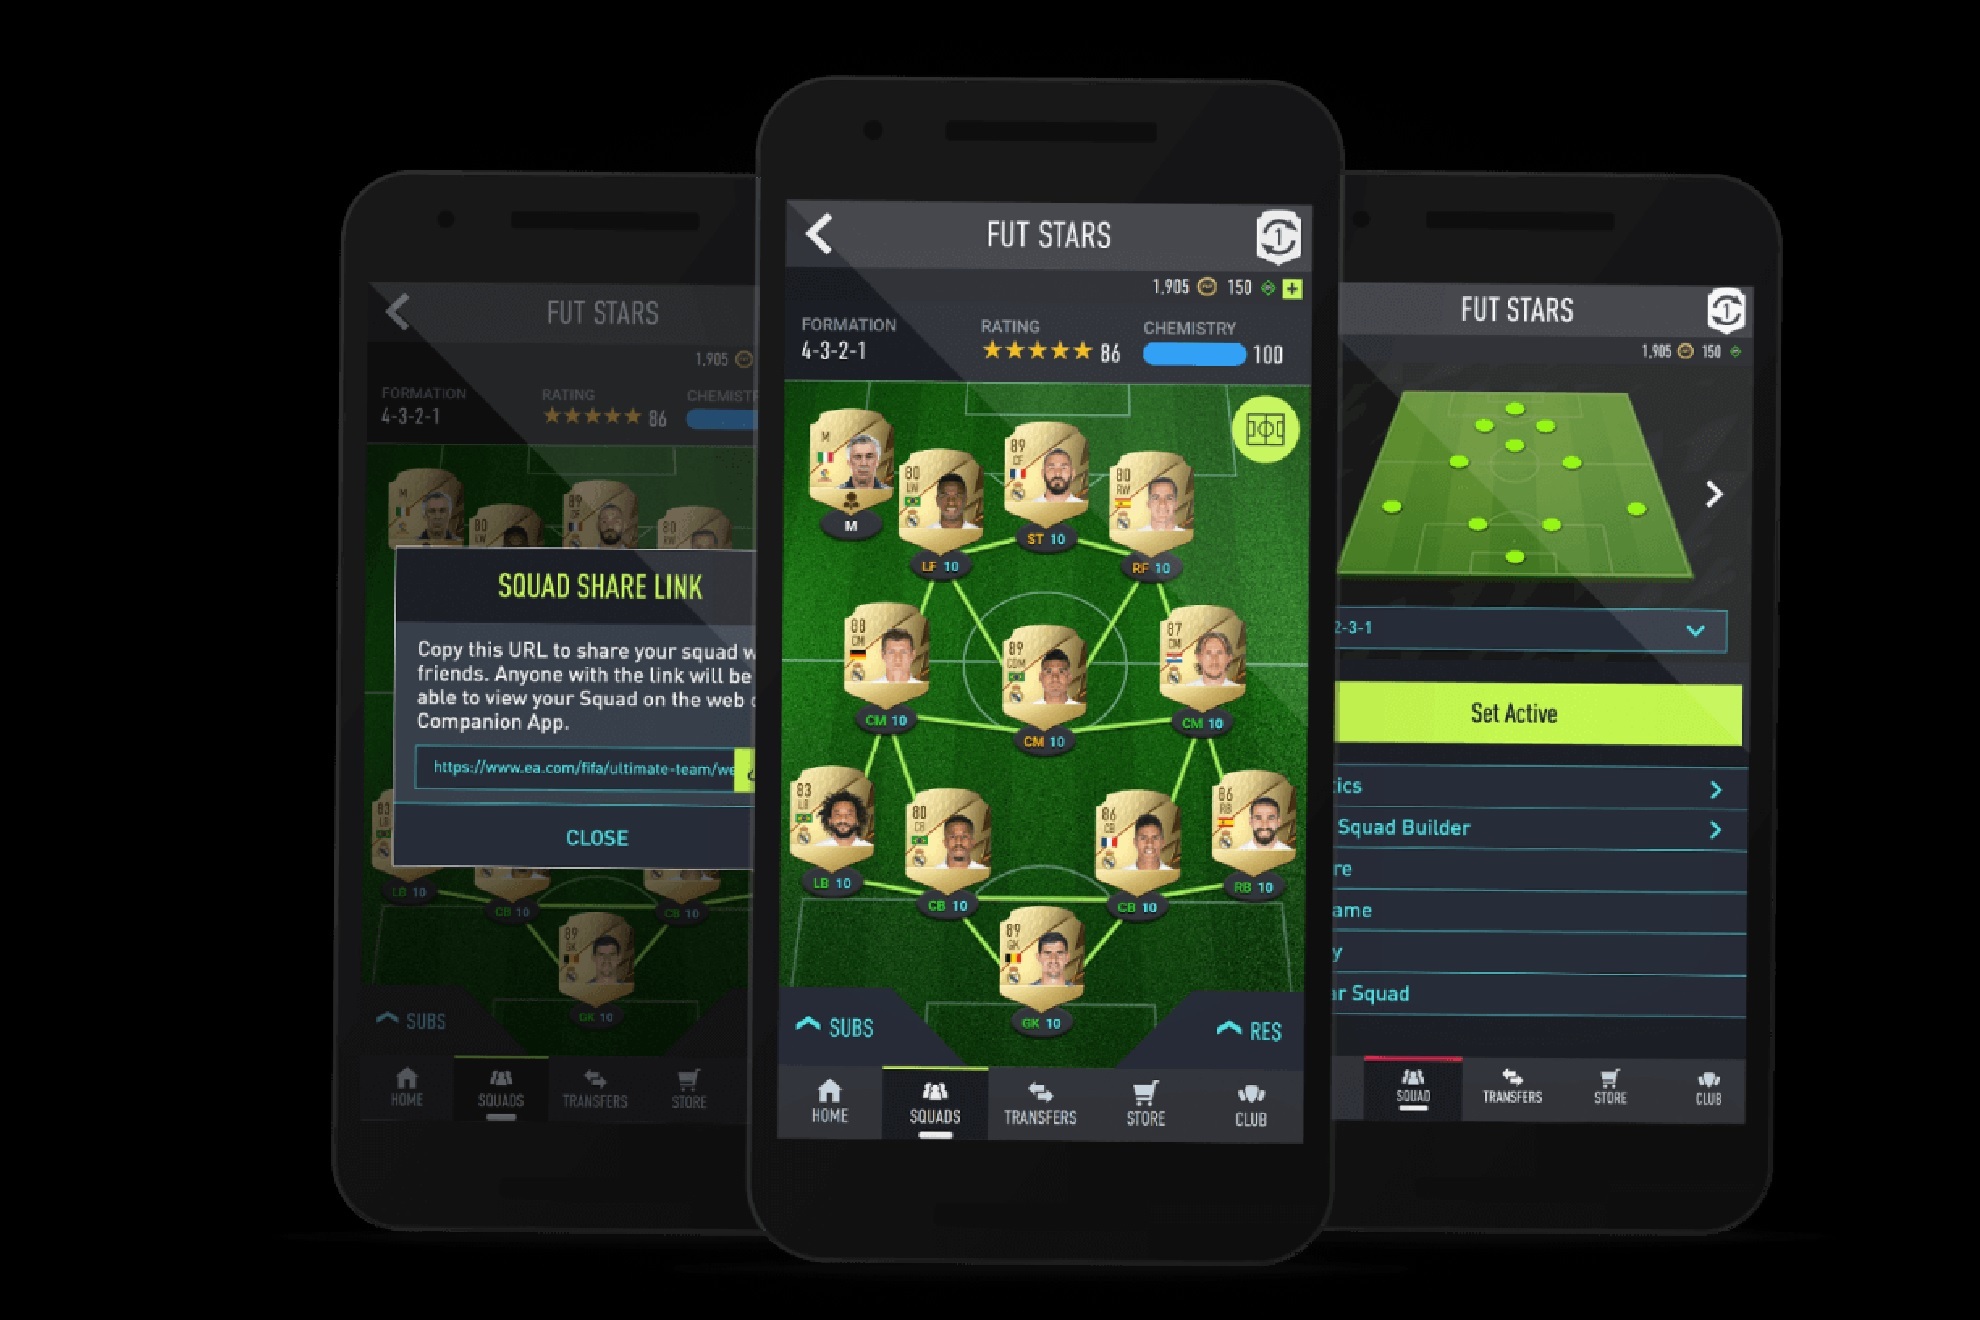 Cómo acceder a la Web App y la Companion App de FIFA 23 - TyC Sports